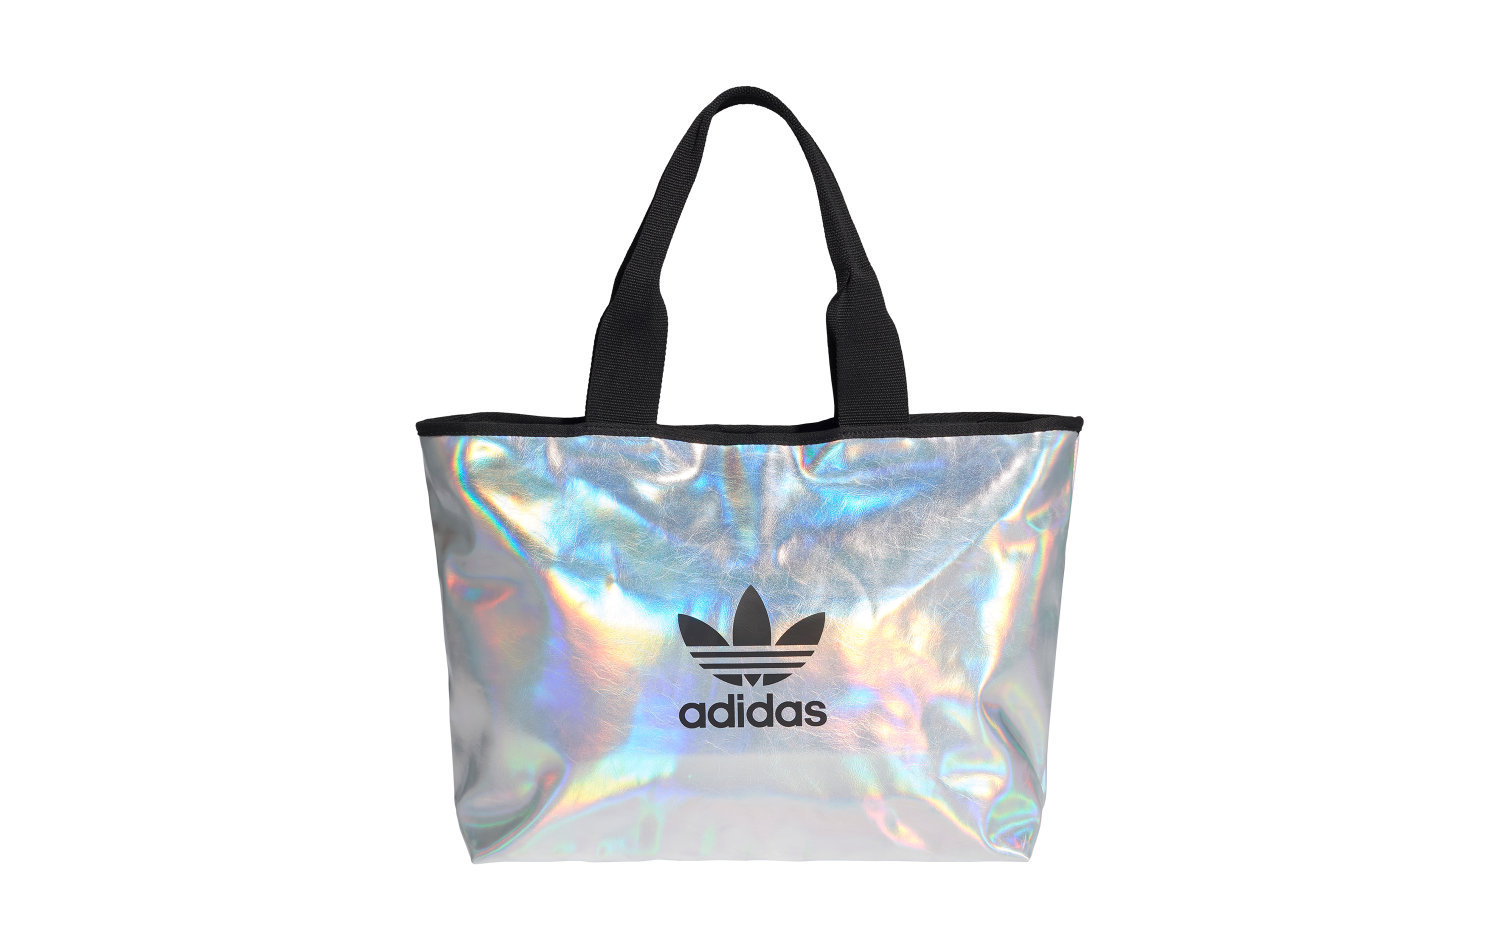 Adidas Shopper M, Silver Metallic/Iridescent női táska eladó, ár | Garage  Store Webshop